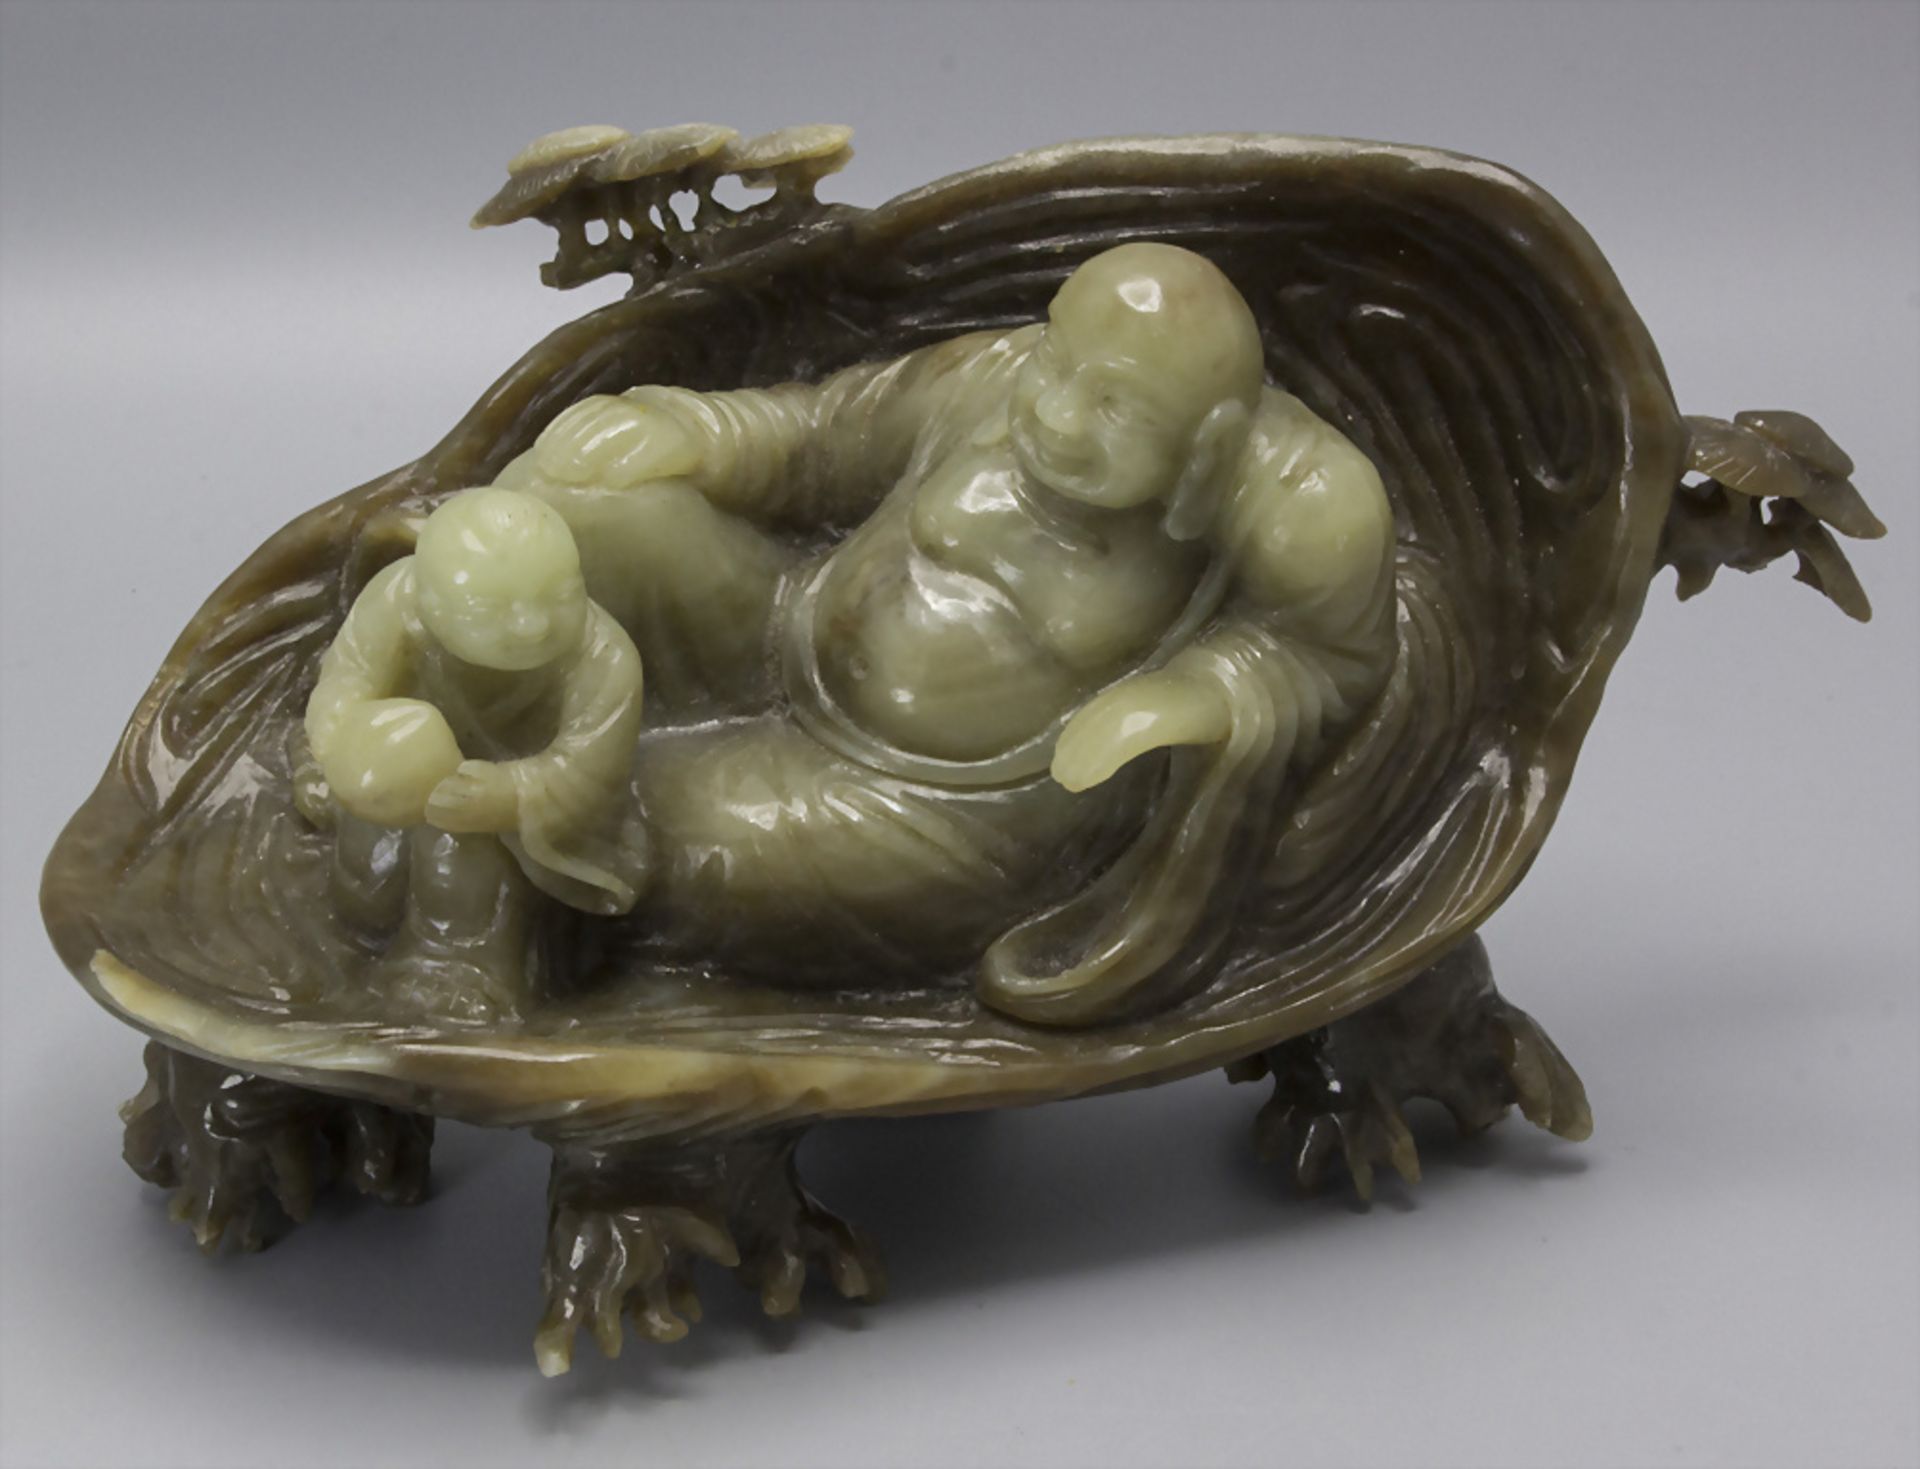 Liegender Glücksbuddha mit Adoranten / A reclining Buddha with adorers, China, 19./20. Jh.